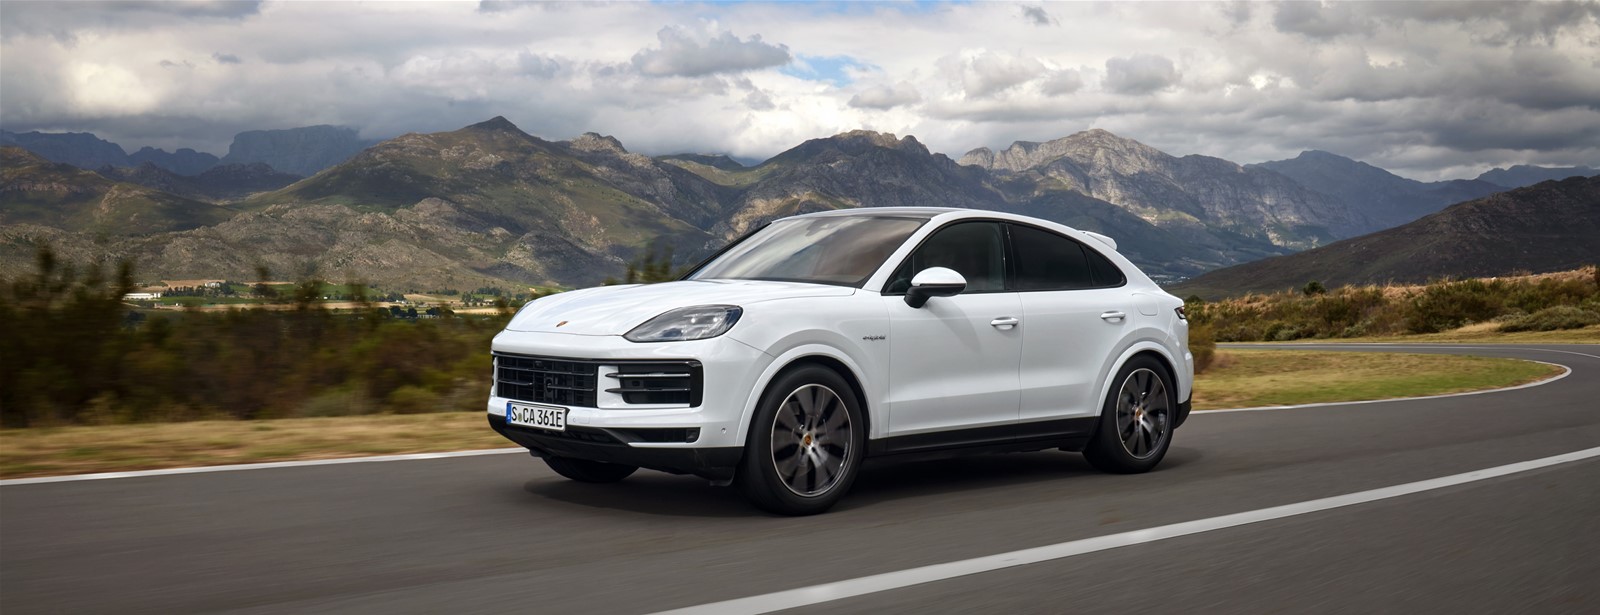 Porsche presenteert vernieuwde Cayenne: meer luxe, meer performance.